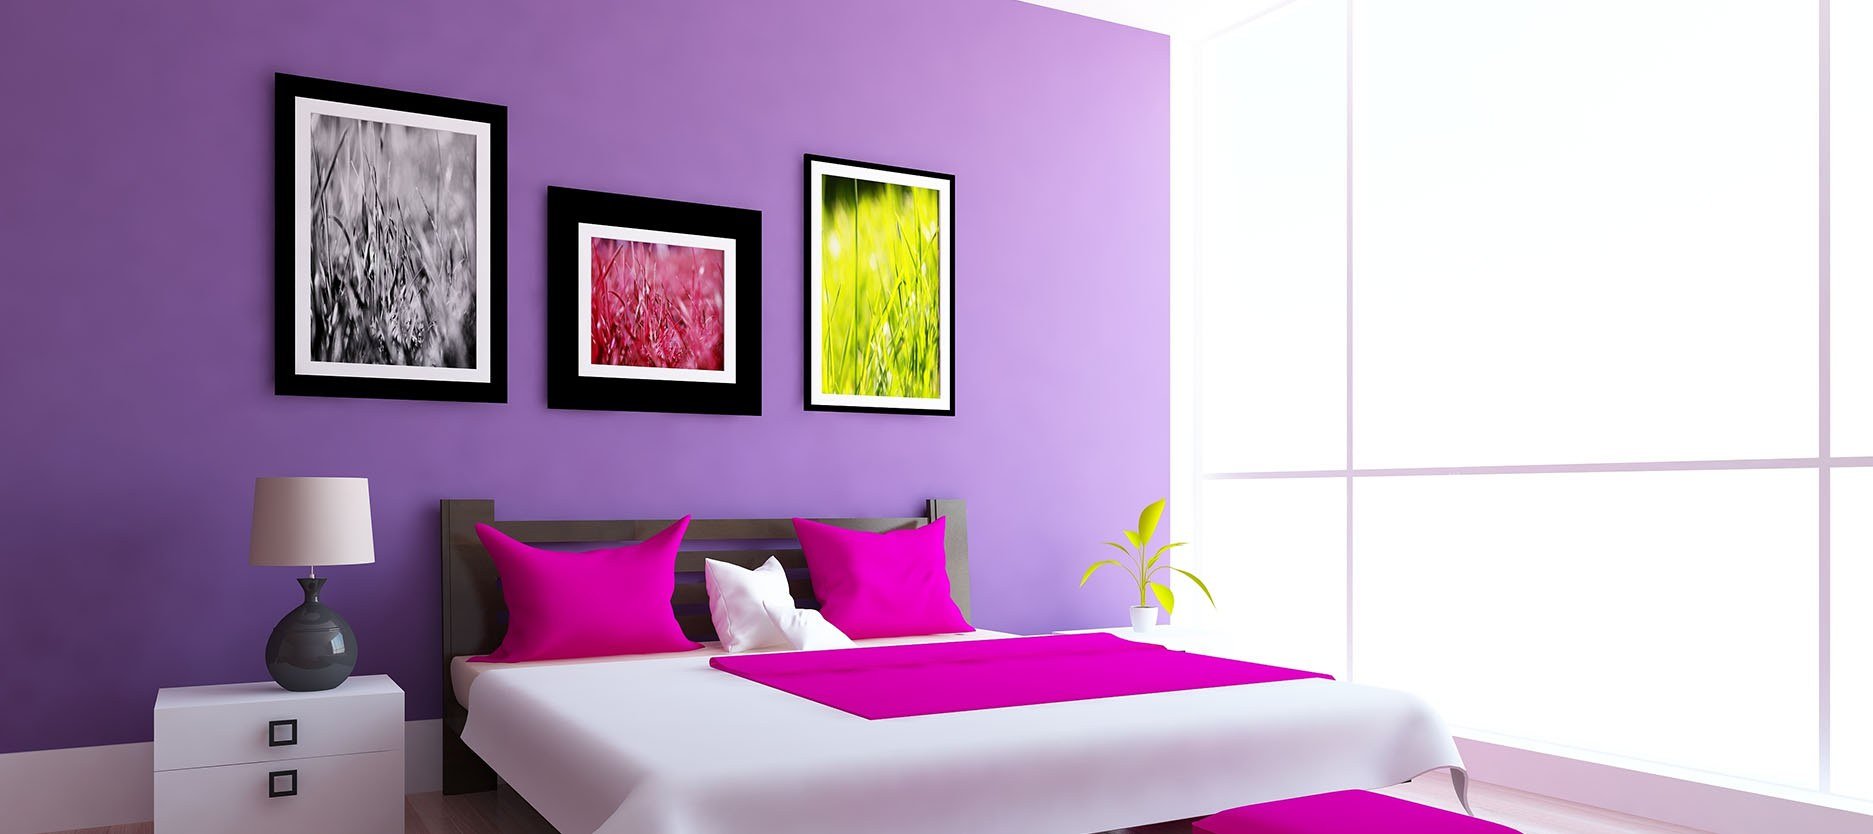 Фиолетовые белые обои. Фиолетовый цвет стен. Фиолетовые стены в интерьере. Фиолетовый интерьер спальни. Спальня цвета фуксии.